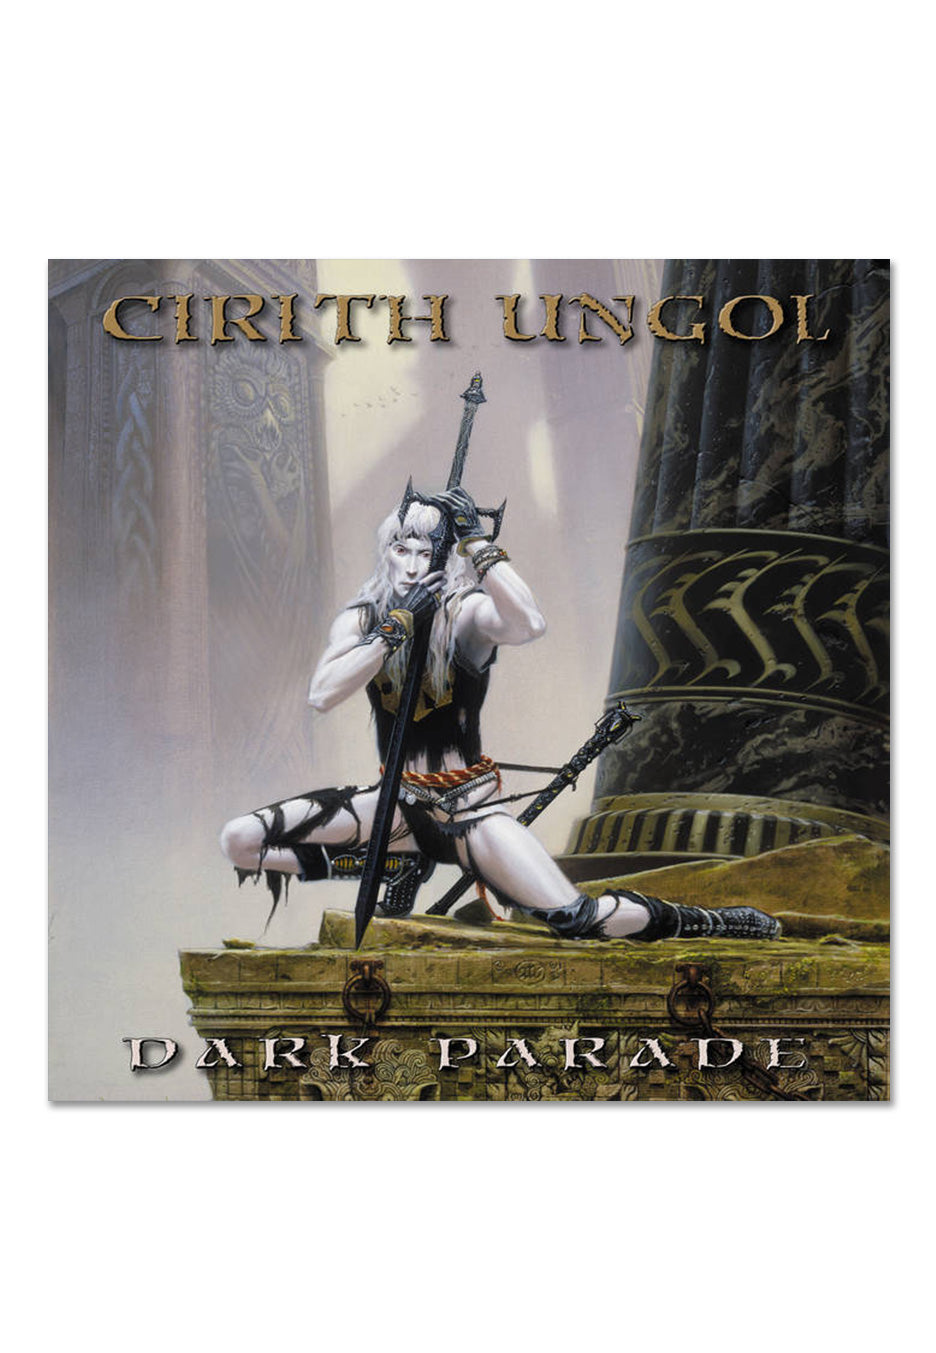 Cirith Ungol - Dark Parade (Ltd. Special Edition) Gold - Colored 2 Vinyl